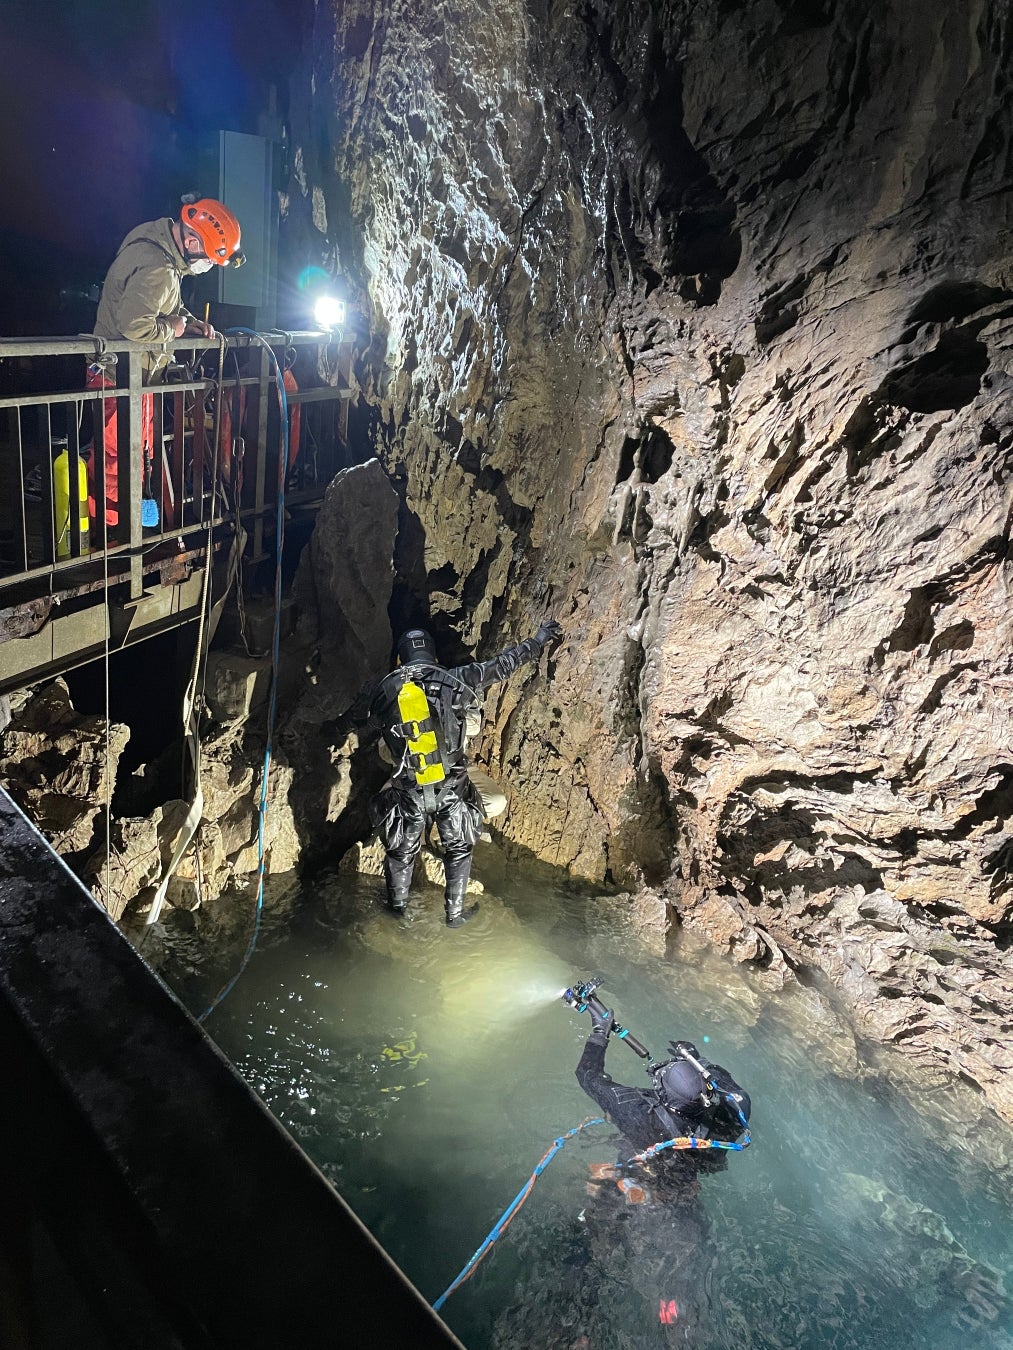 日本三大鍾乳洞の一つ、国の天然記念物にも指定されている岩手県の龍泉洞にて6年ぶりの調査潜水を4月に実施、ディスカバリーチャンネルが準備から潜水までに初めて完全密着し貴重な映像を撮影、ミニ番組を制作。のサブ画像4